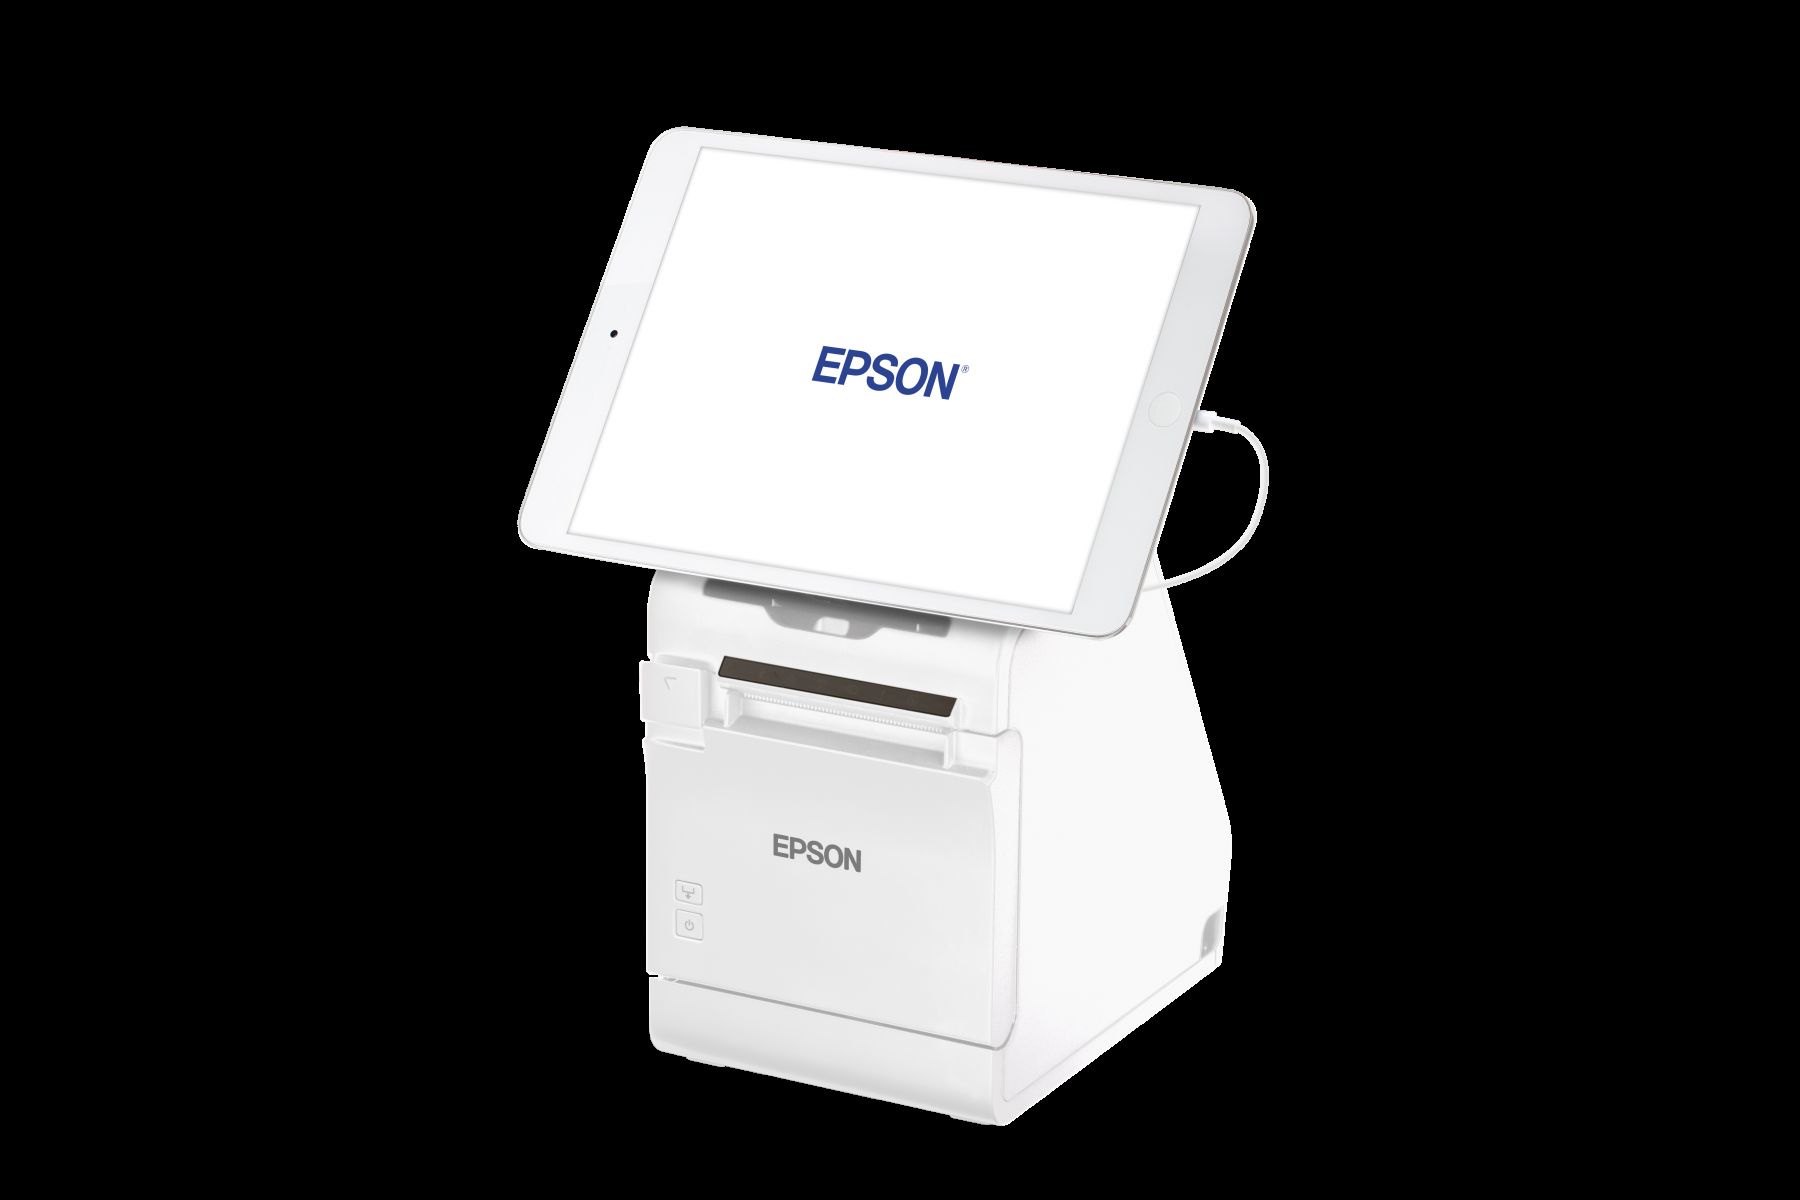 Epson prezentuje nowy model drukarki wspierającej obsługę klienta w handlu i branży hotelarskiej